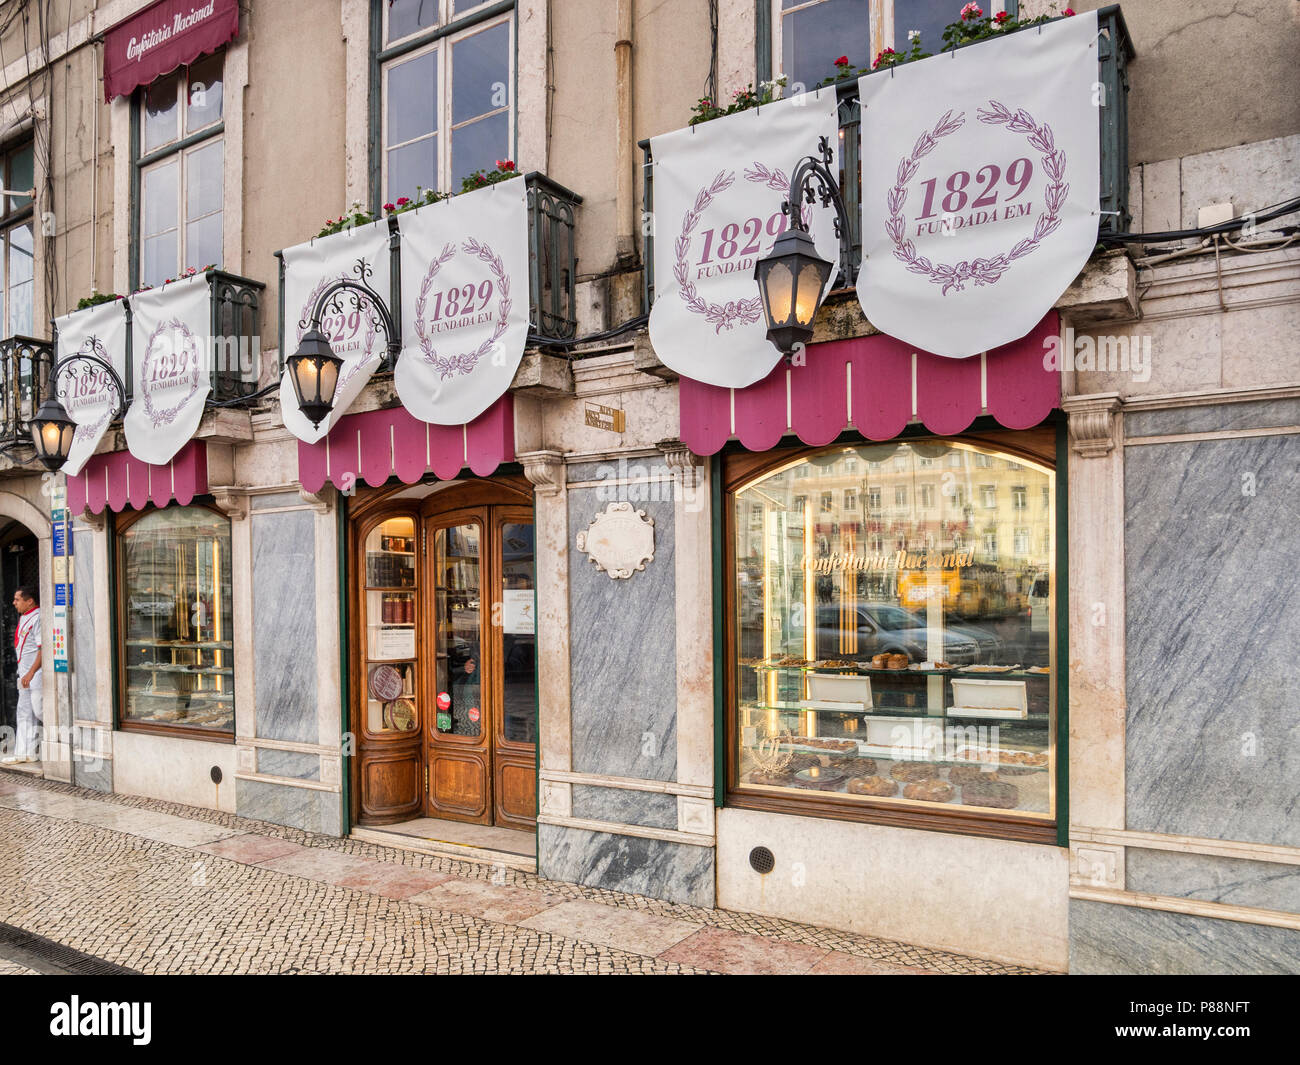 27 Février 2018 : Lisbonne, Portugal - la Confeitaria Nacional, ou pâtisserie nationale, établie en 1829, est considéré comme le plus ancien de Lisbonne. Banque D'Images